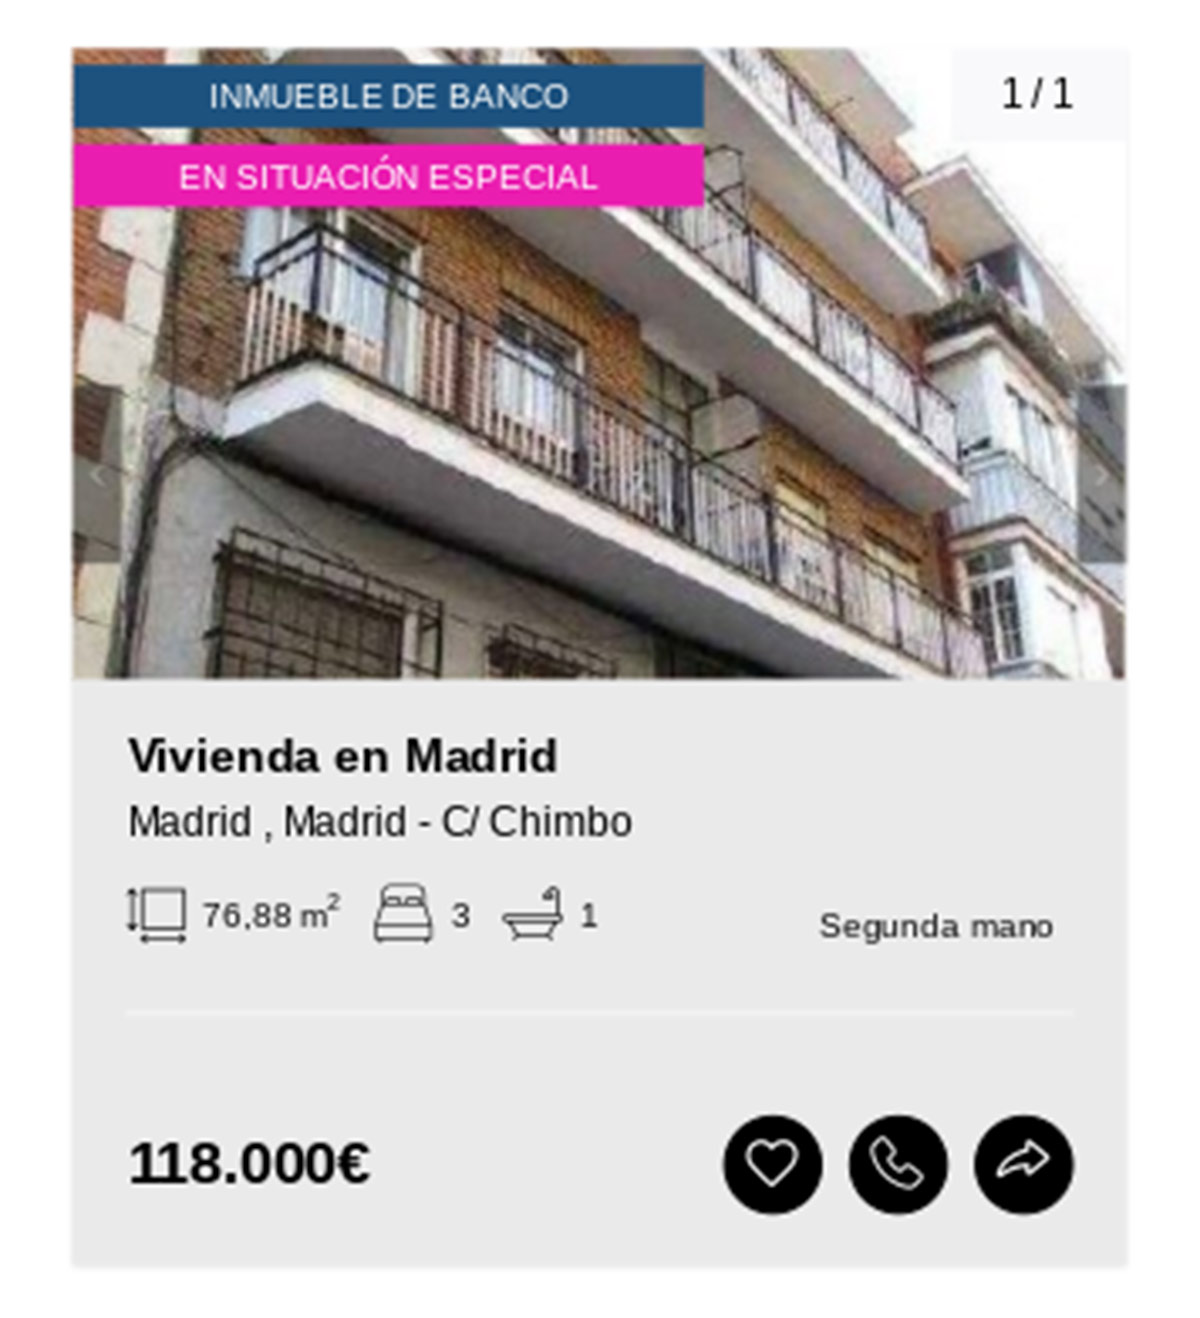 Piso en Madrid de Solvia por 118.000 euros